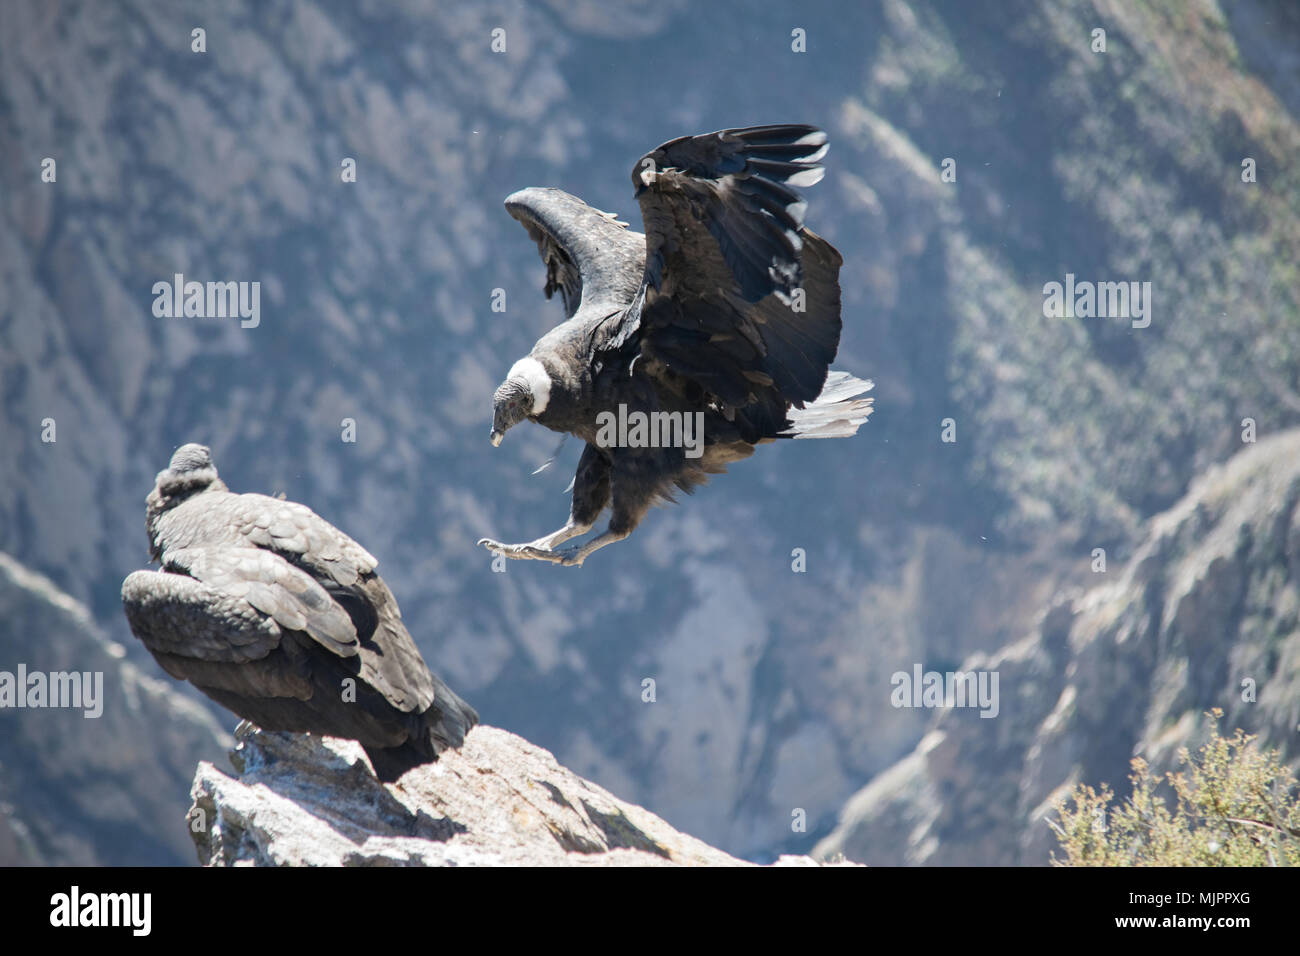 Un condor au canyon de Colca (Pérou) Banque D'Images